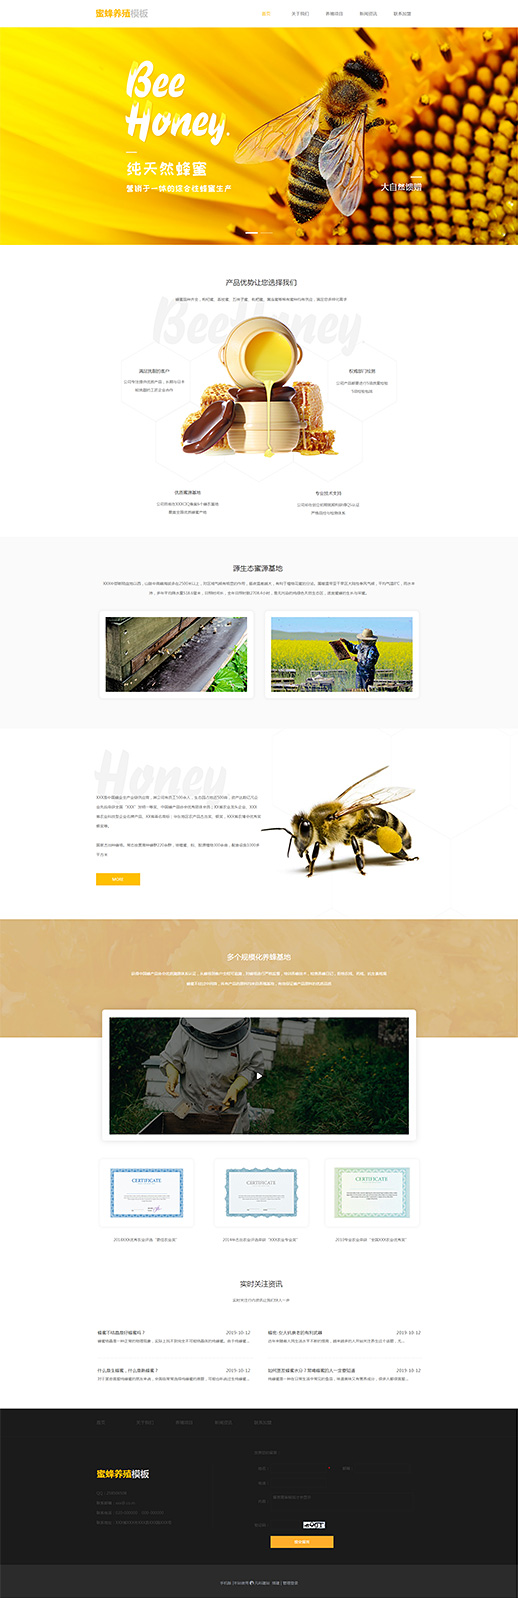 精品蜜蜂养殖网站模板